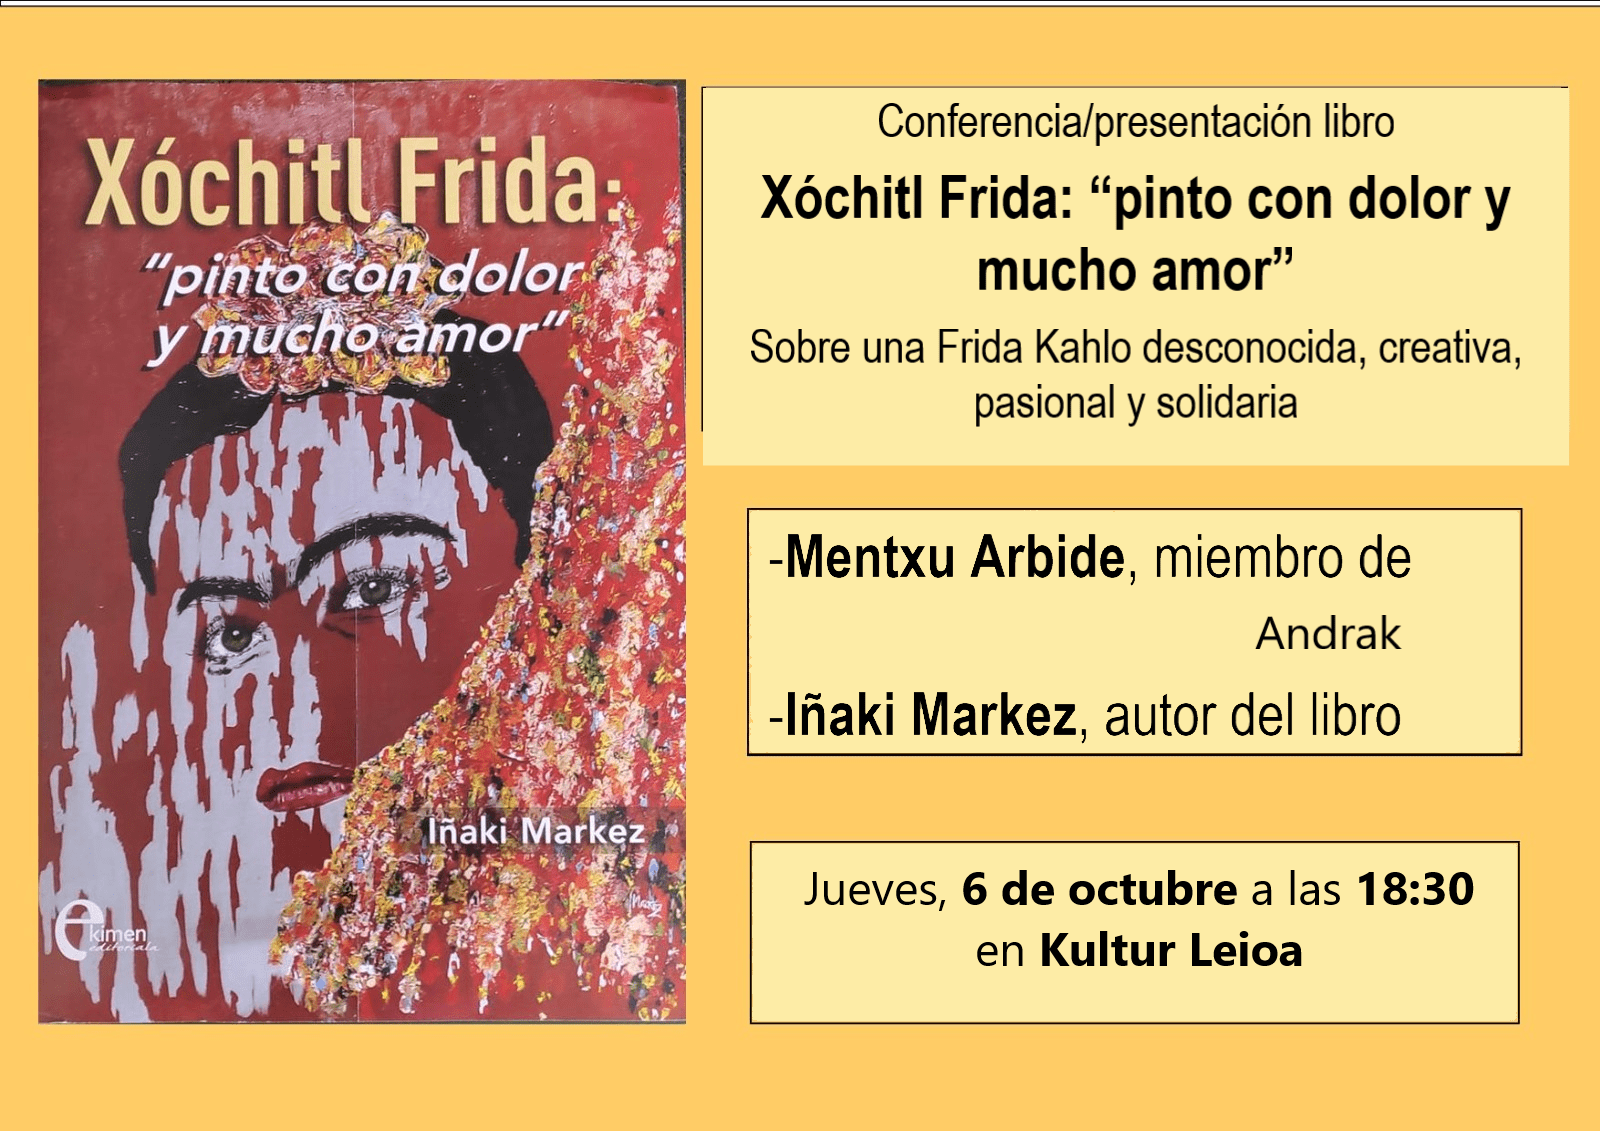 Conferencia-presentación libro: Xochitl Frida "pinto con dolor y mucho amor"